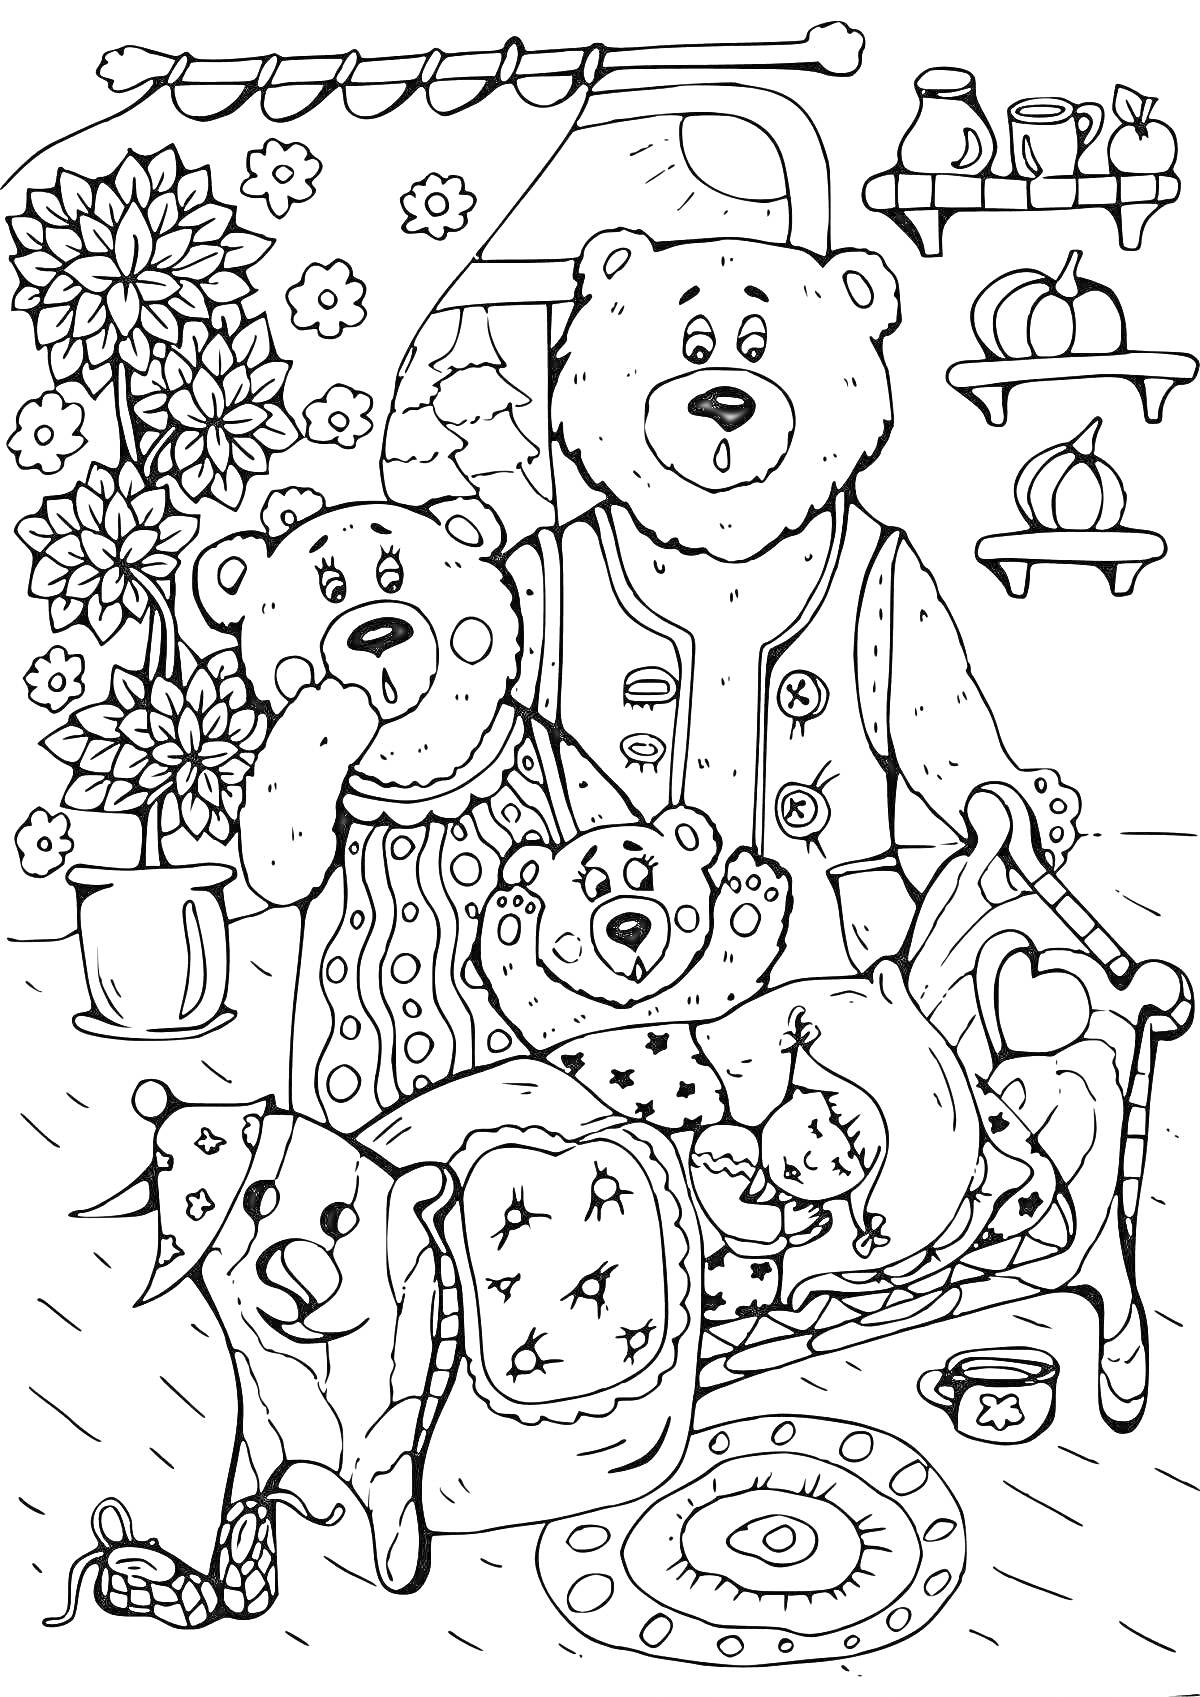 Раскраска Семья медведей с Машей на кровати, горшки и фрукты на полке, цветок в горшке